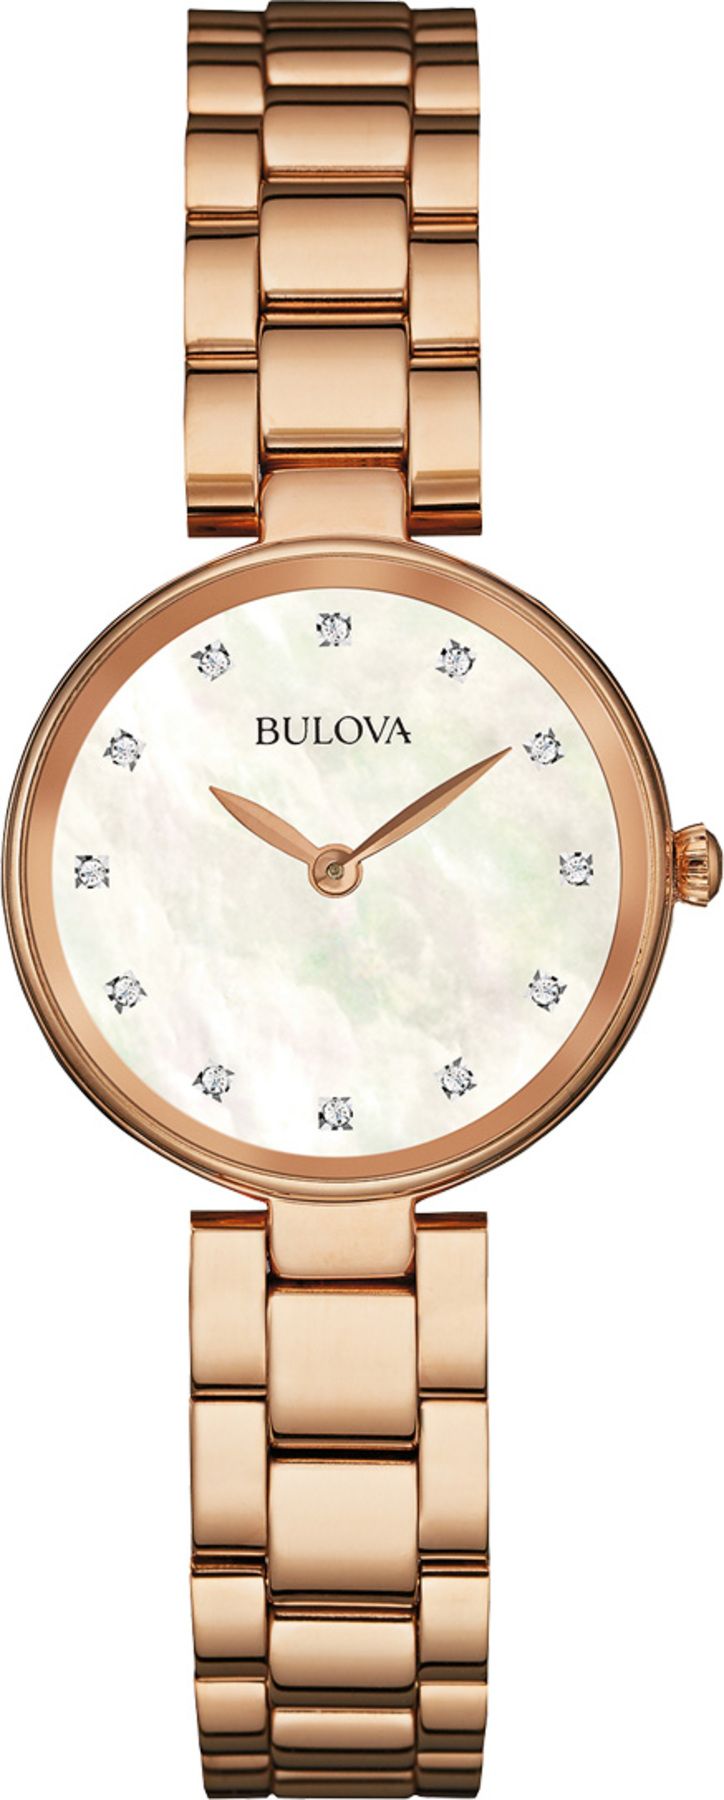 Bulova 97s111